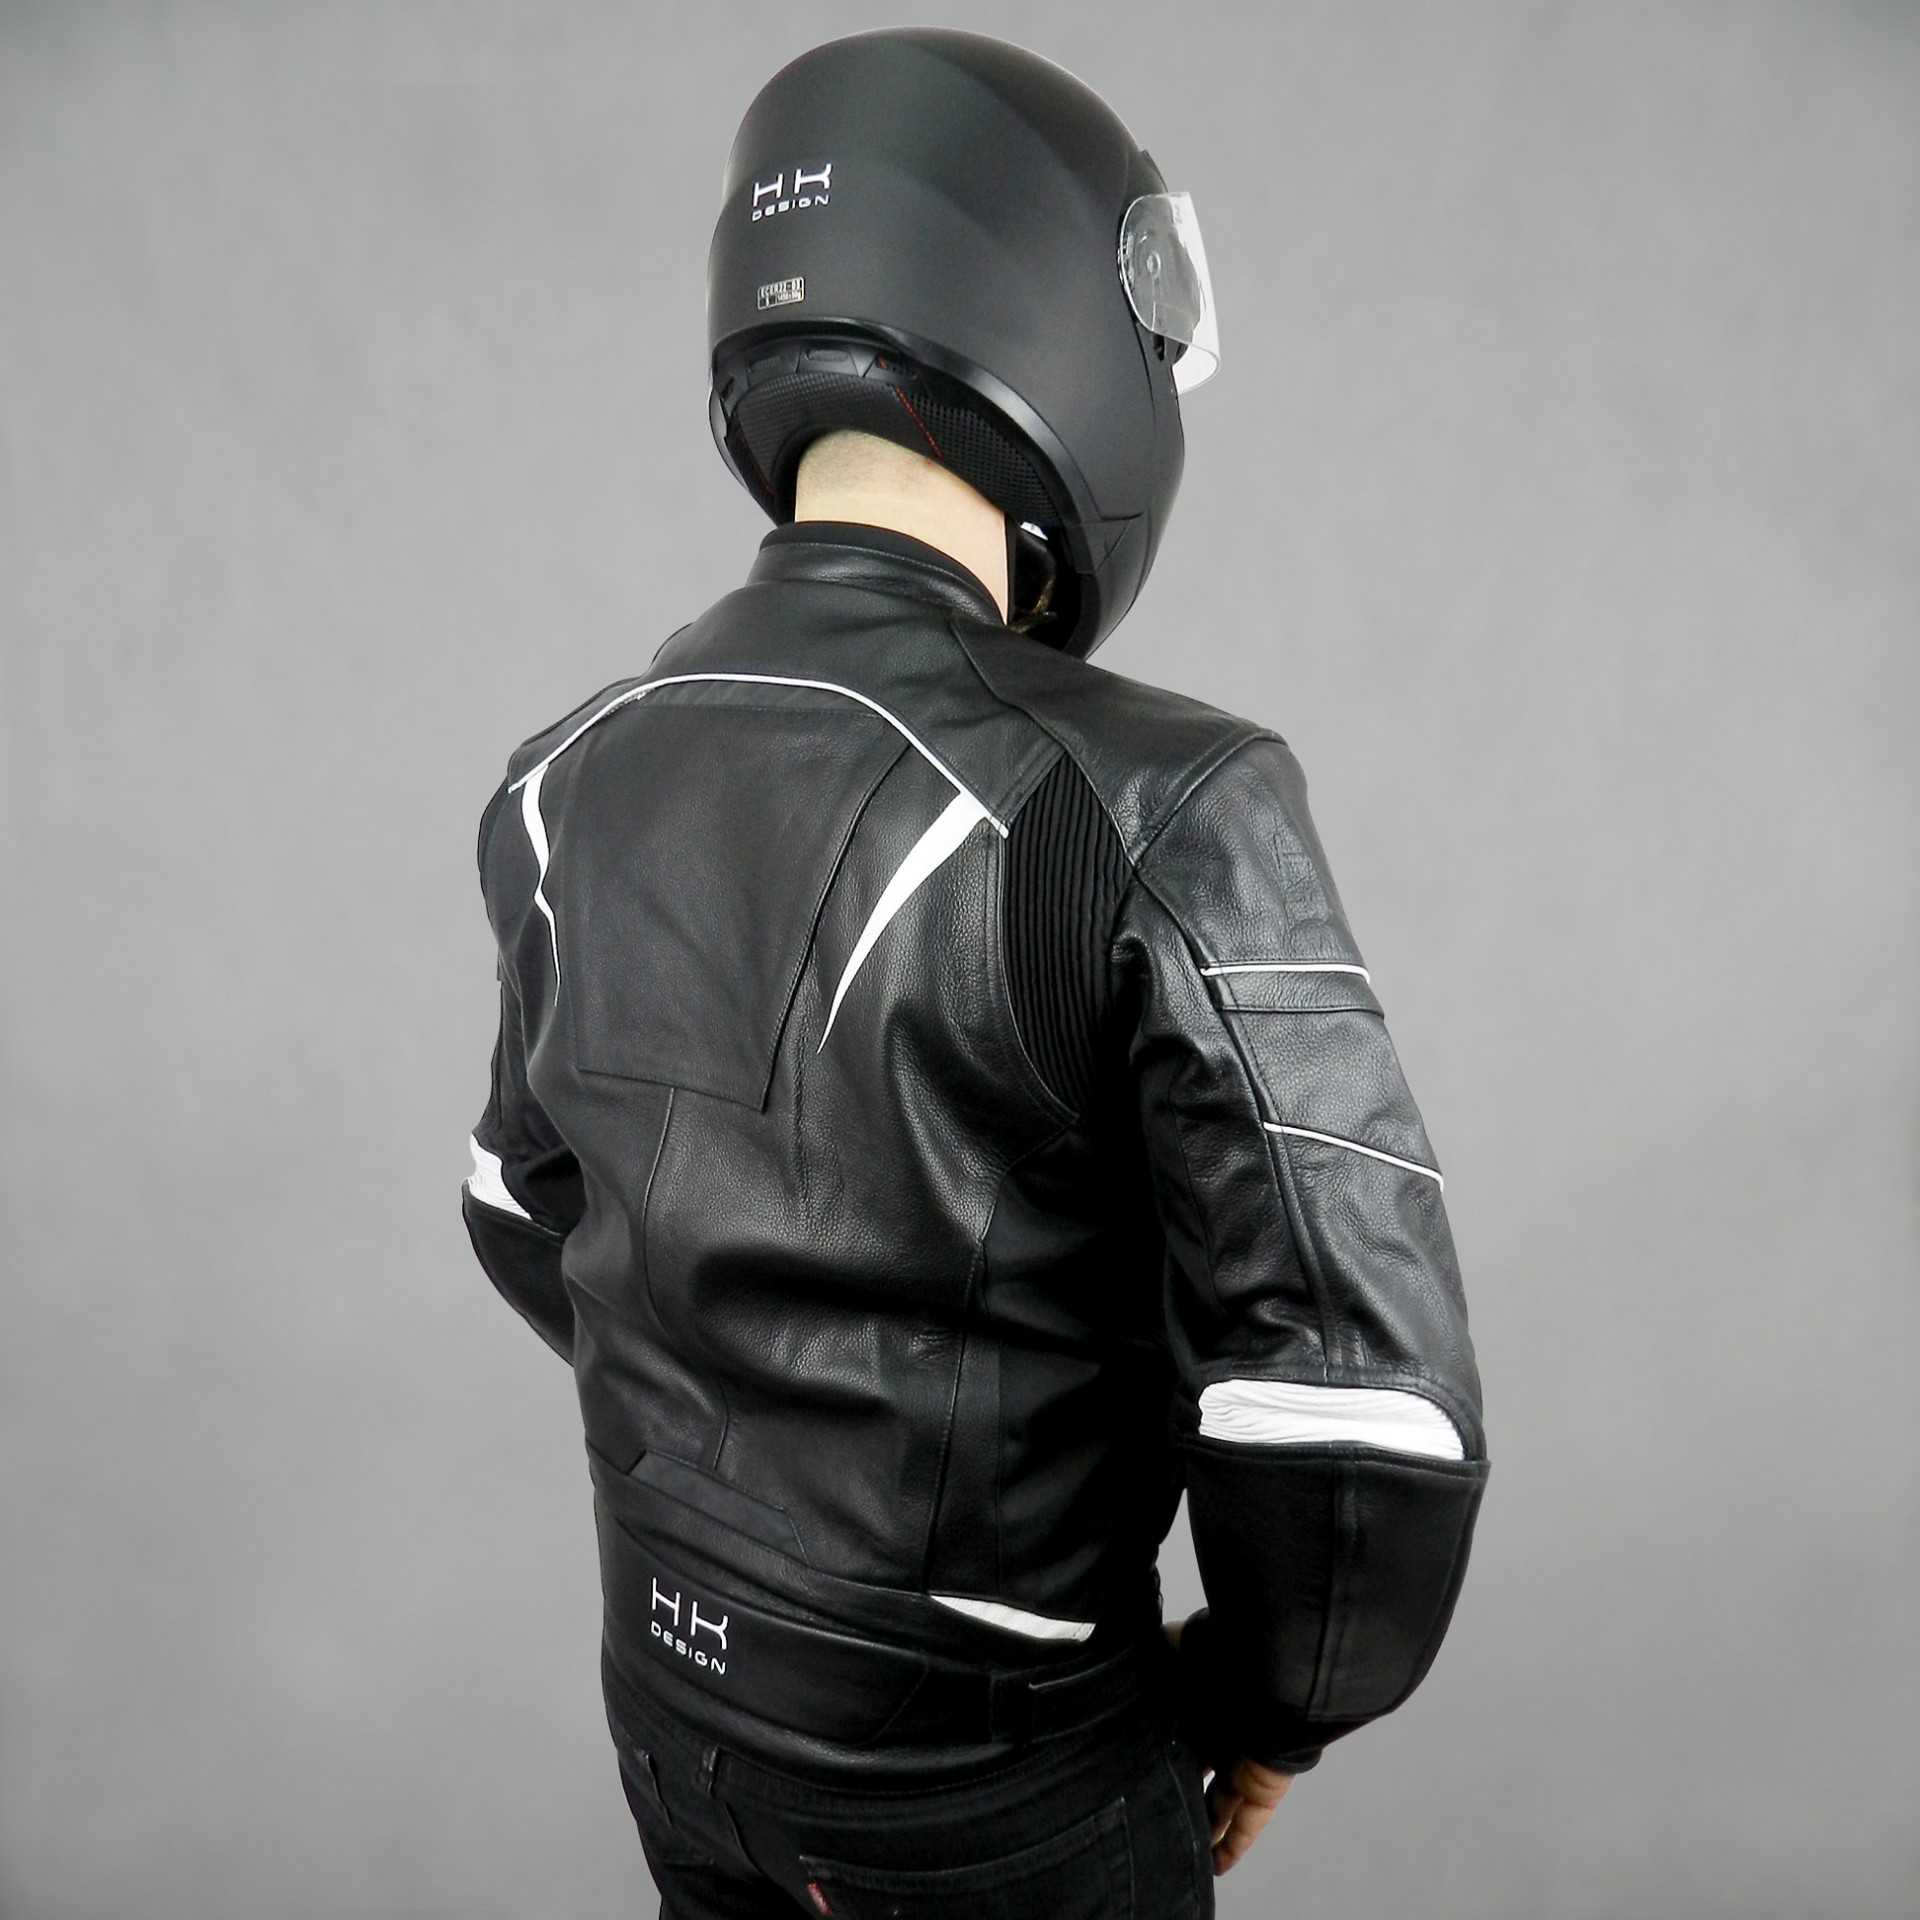 Blouson cuir Restone homologué CE moto noir - Équipement pilote